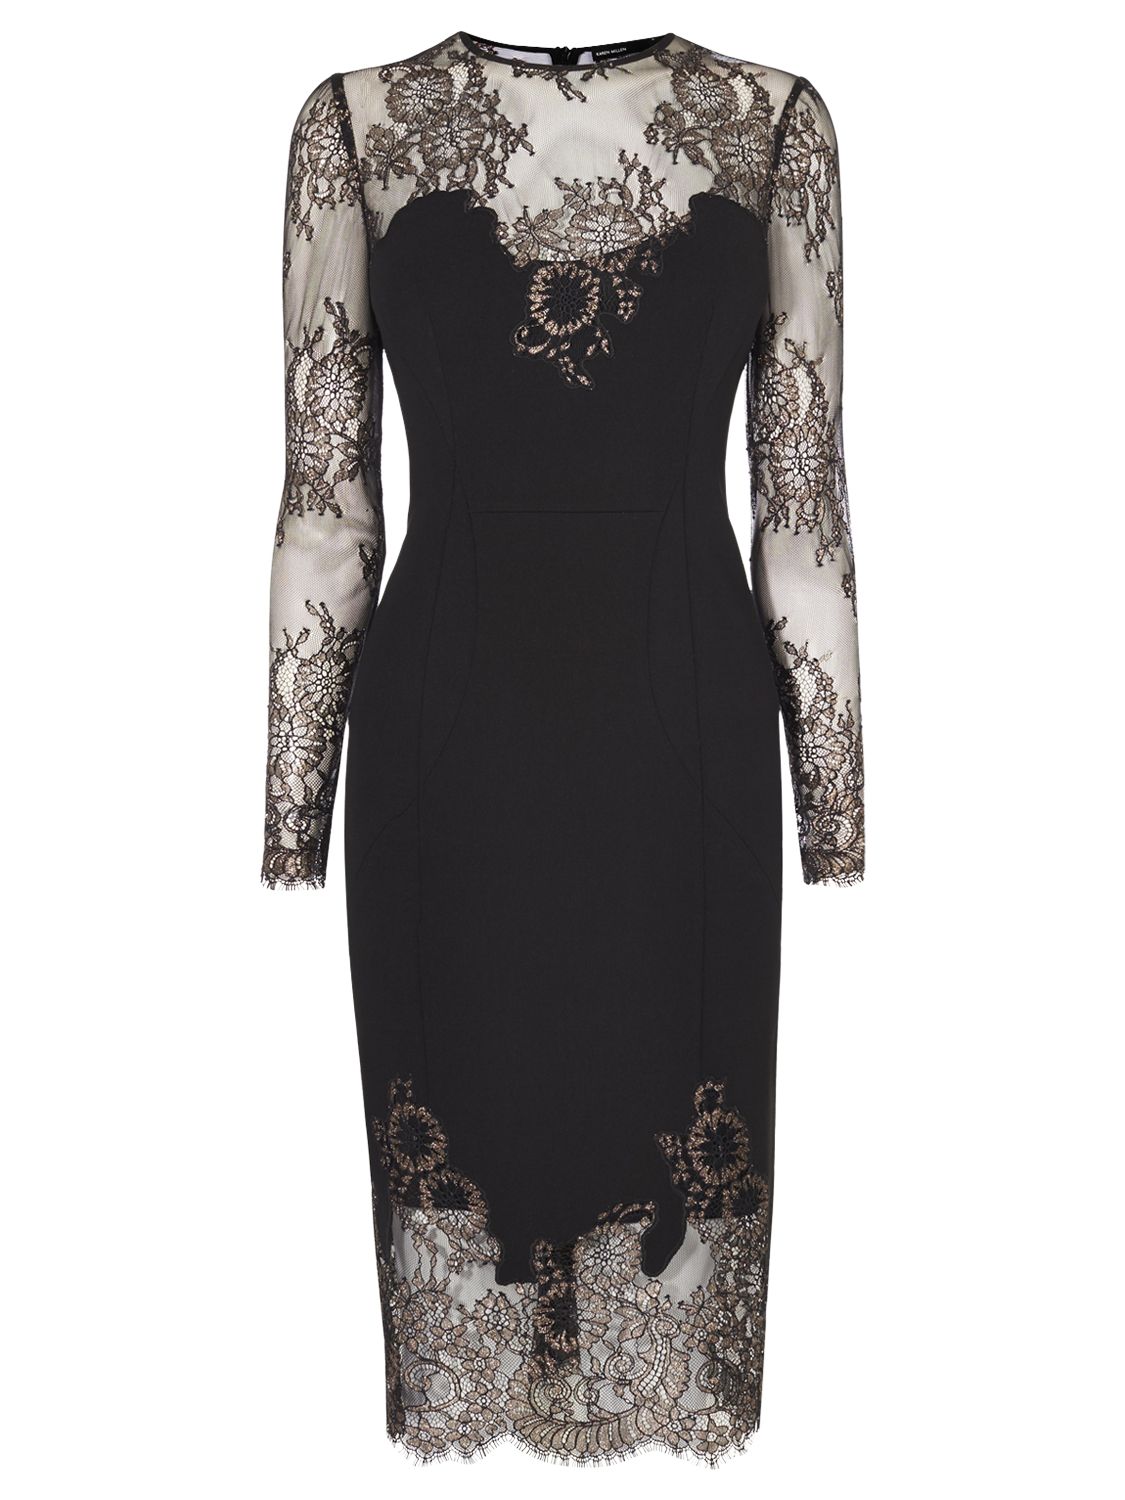 Karen Millen Metallic Lace Dress, Black/Multi at John Lewis & Partners